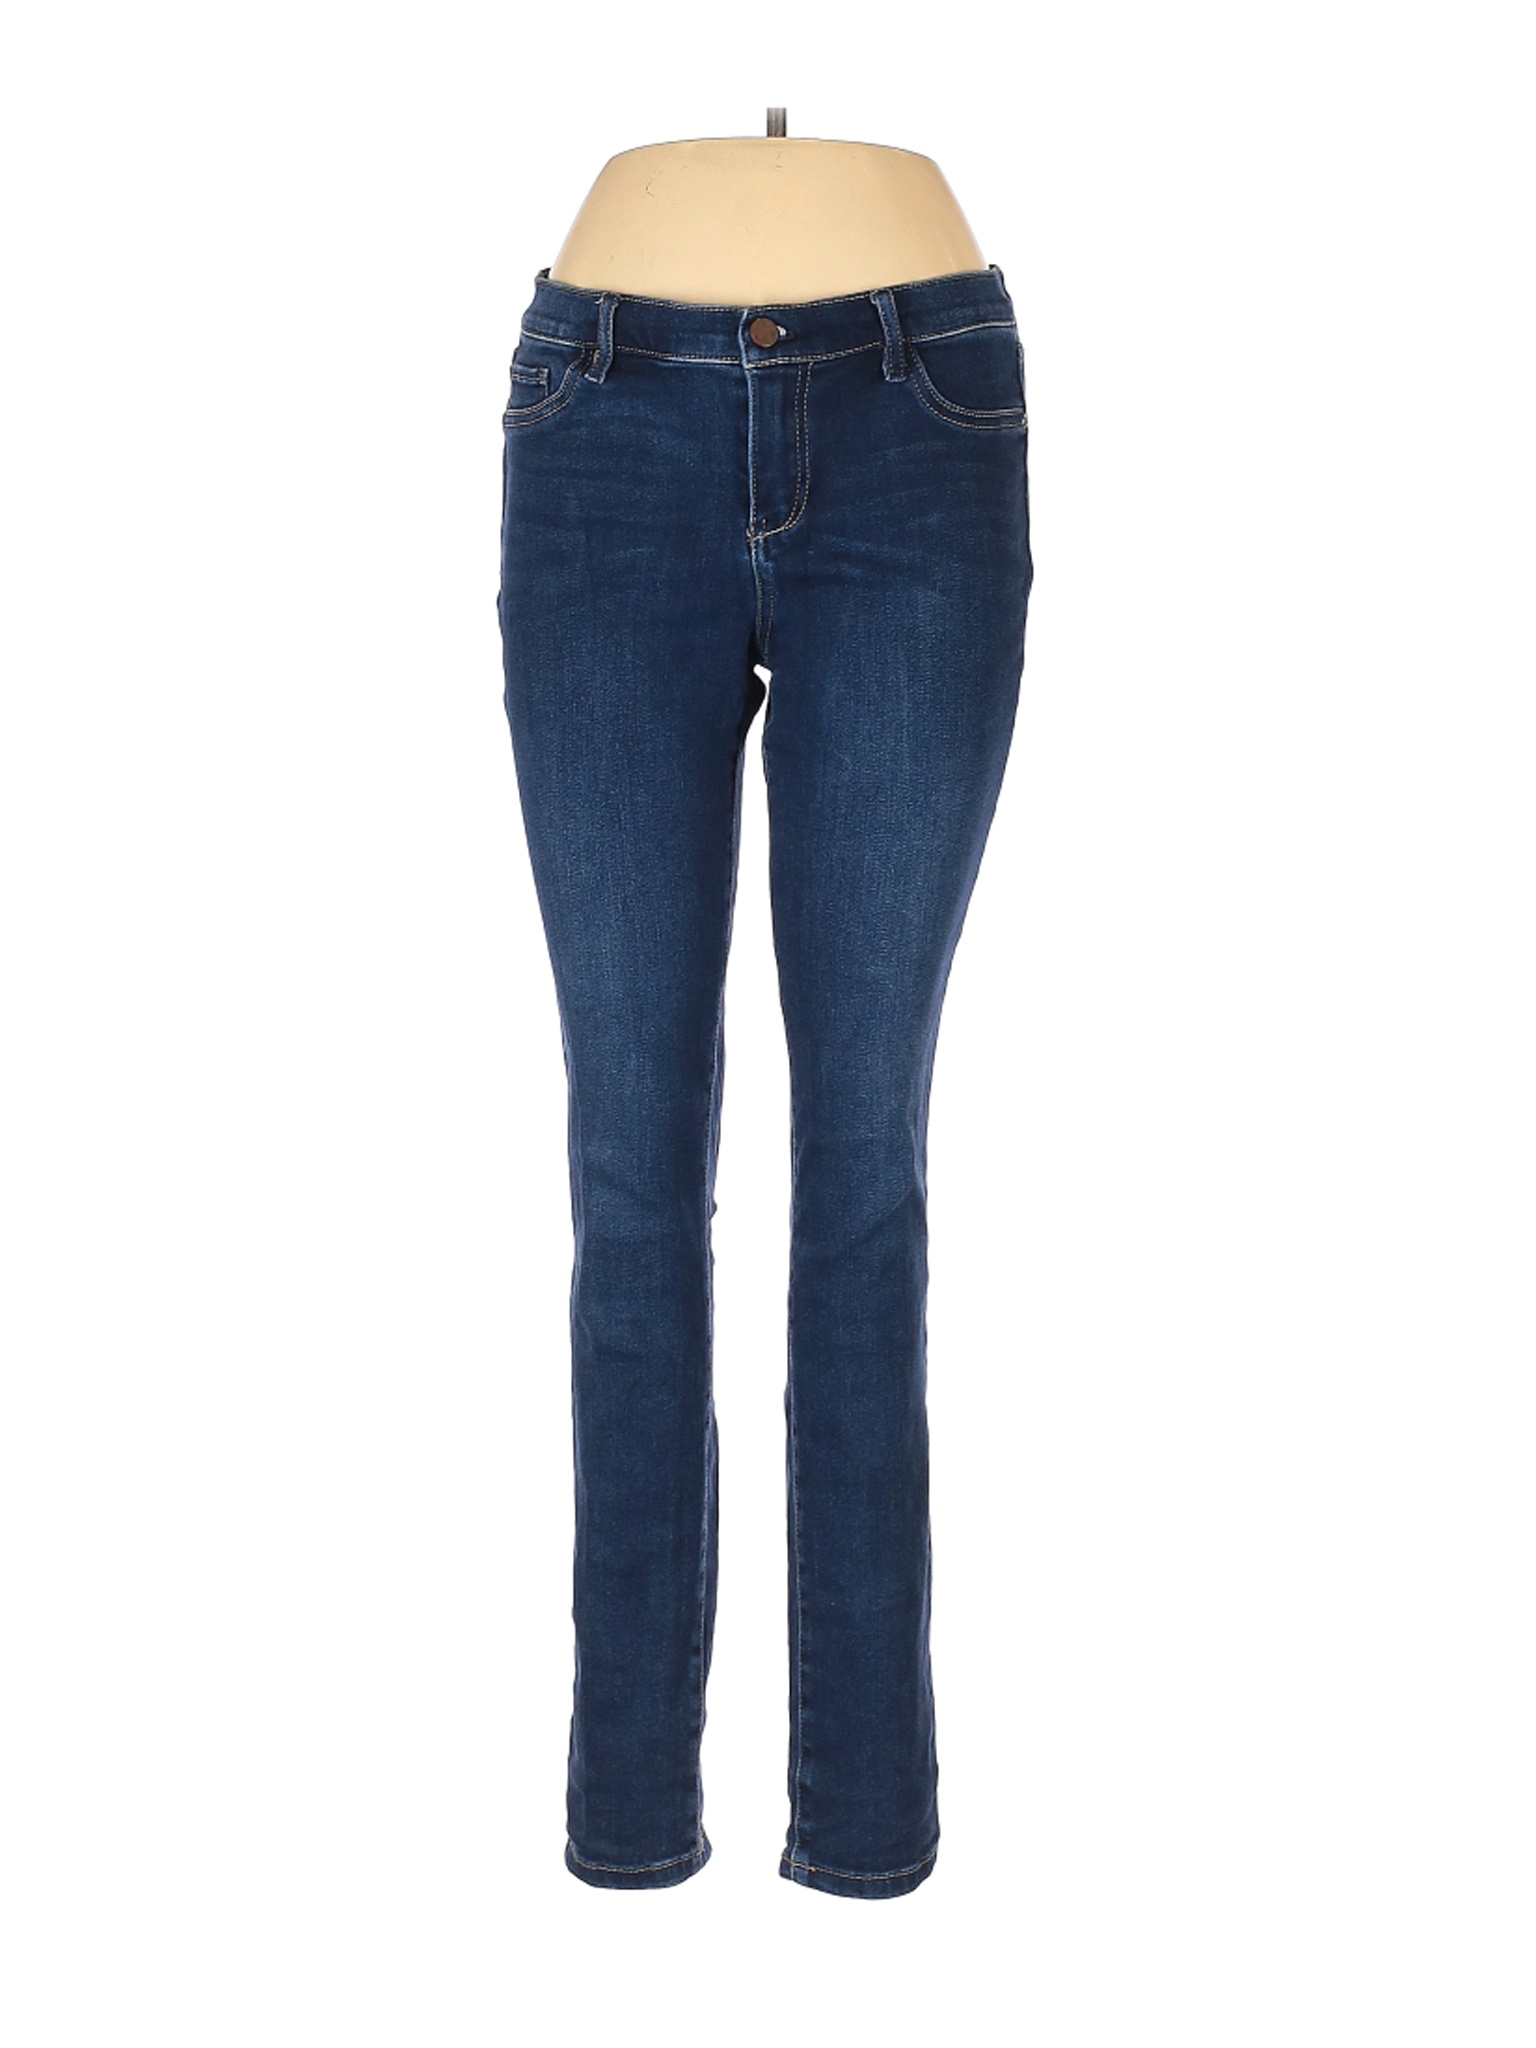 Soho JEANS NEW YORK & COMPANY Women Blue Jeans 10 | eBay